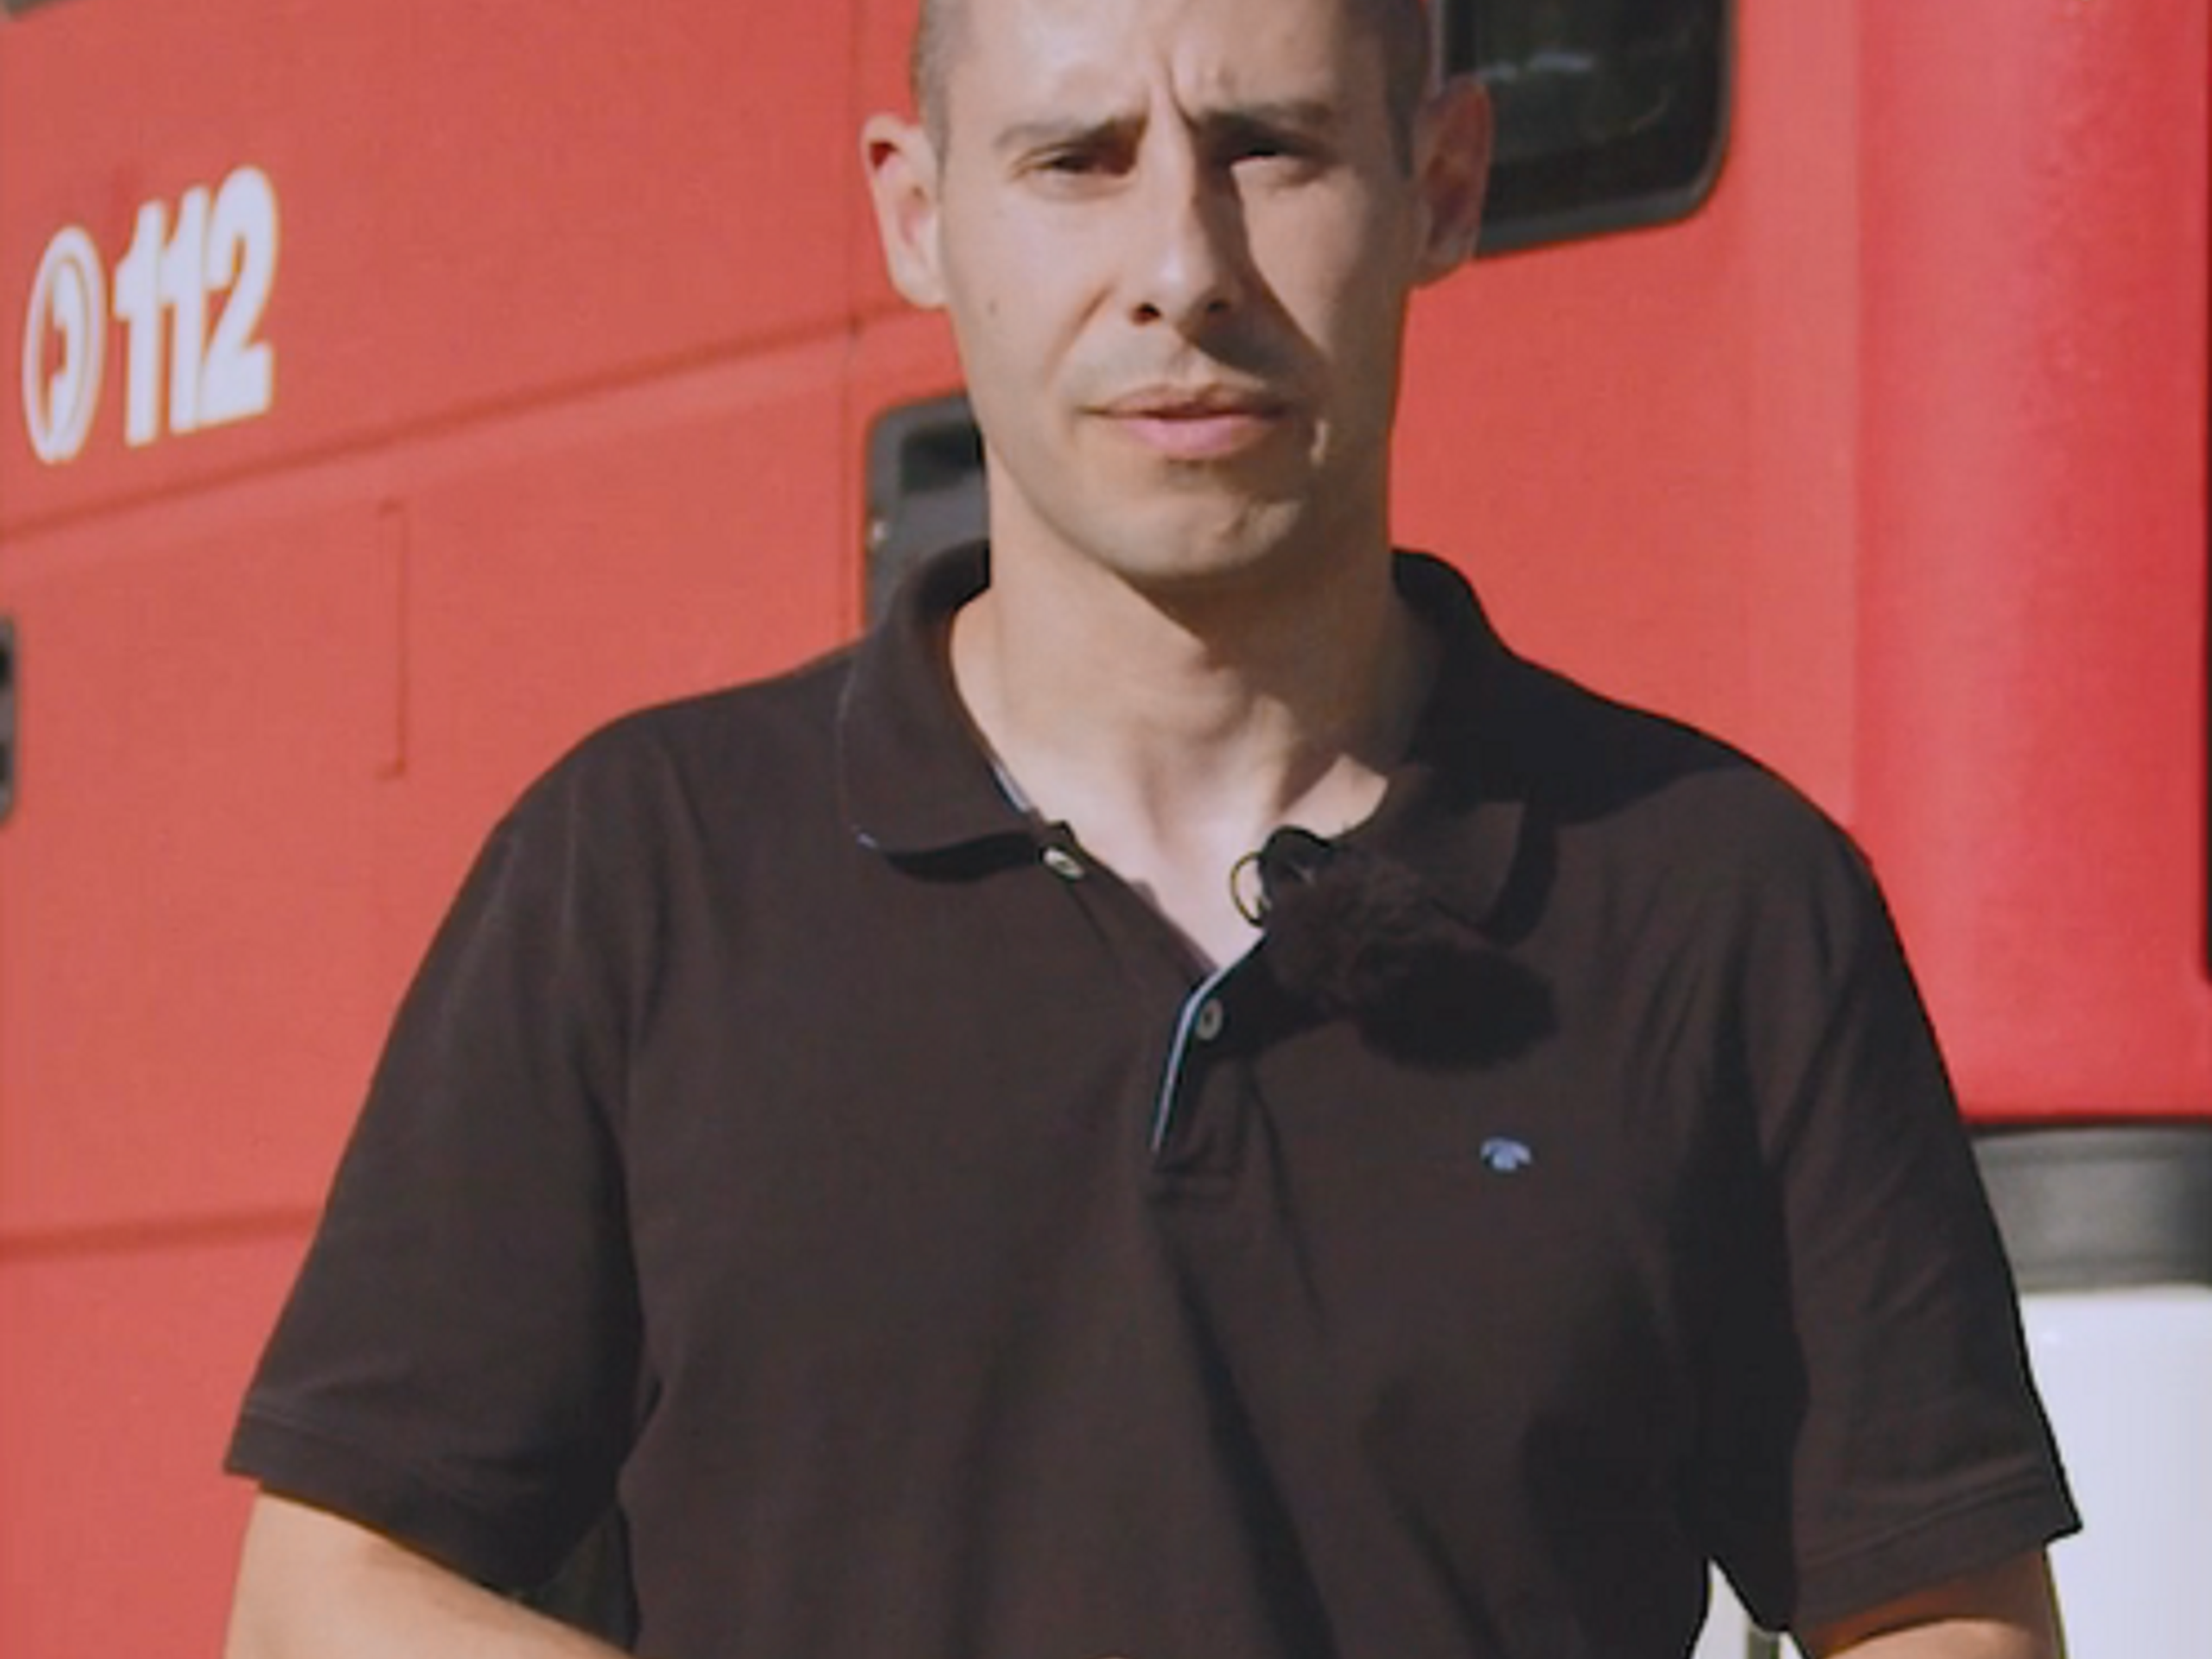 Mann in schwarzem Polohemd vor rotem Auto